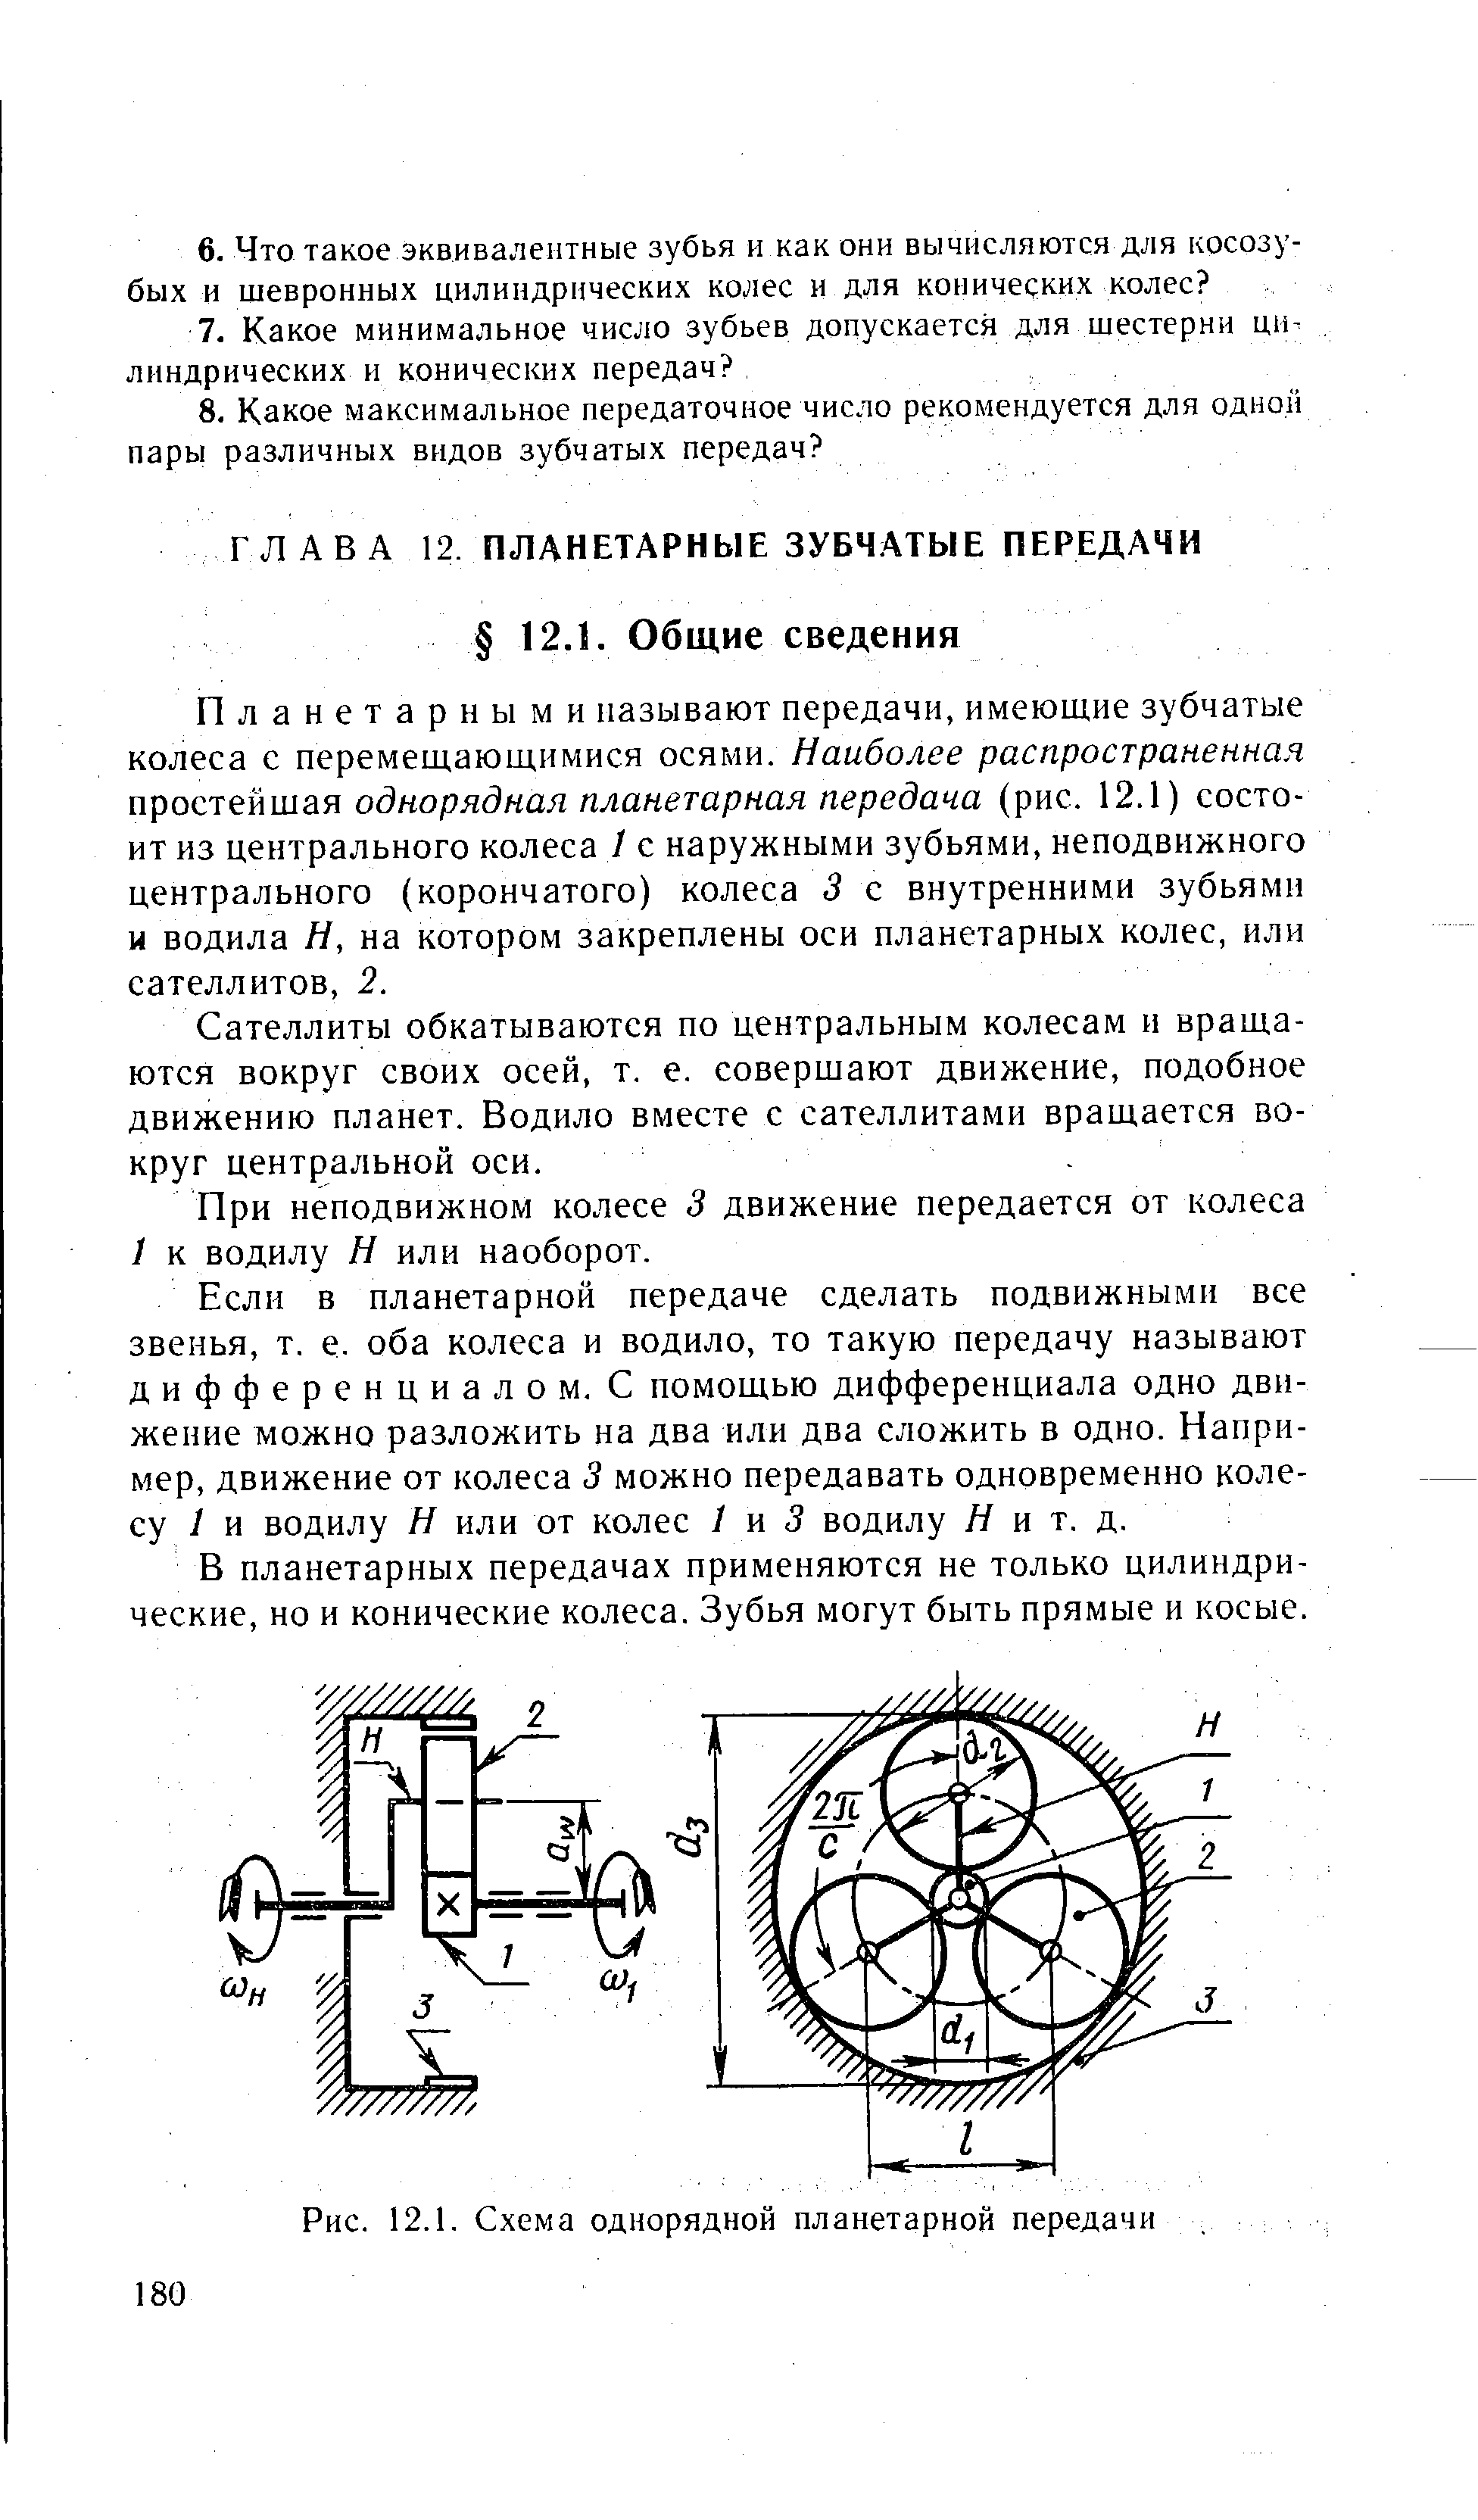 Рис. 12.1. Схема однорядной планетарной передачи
